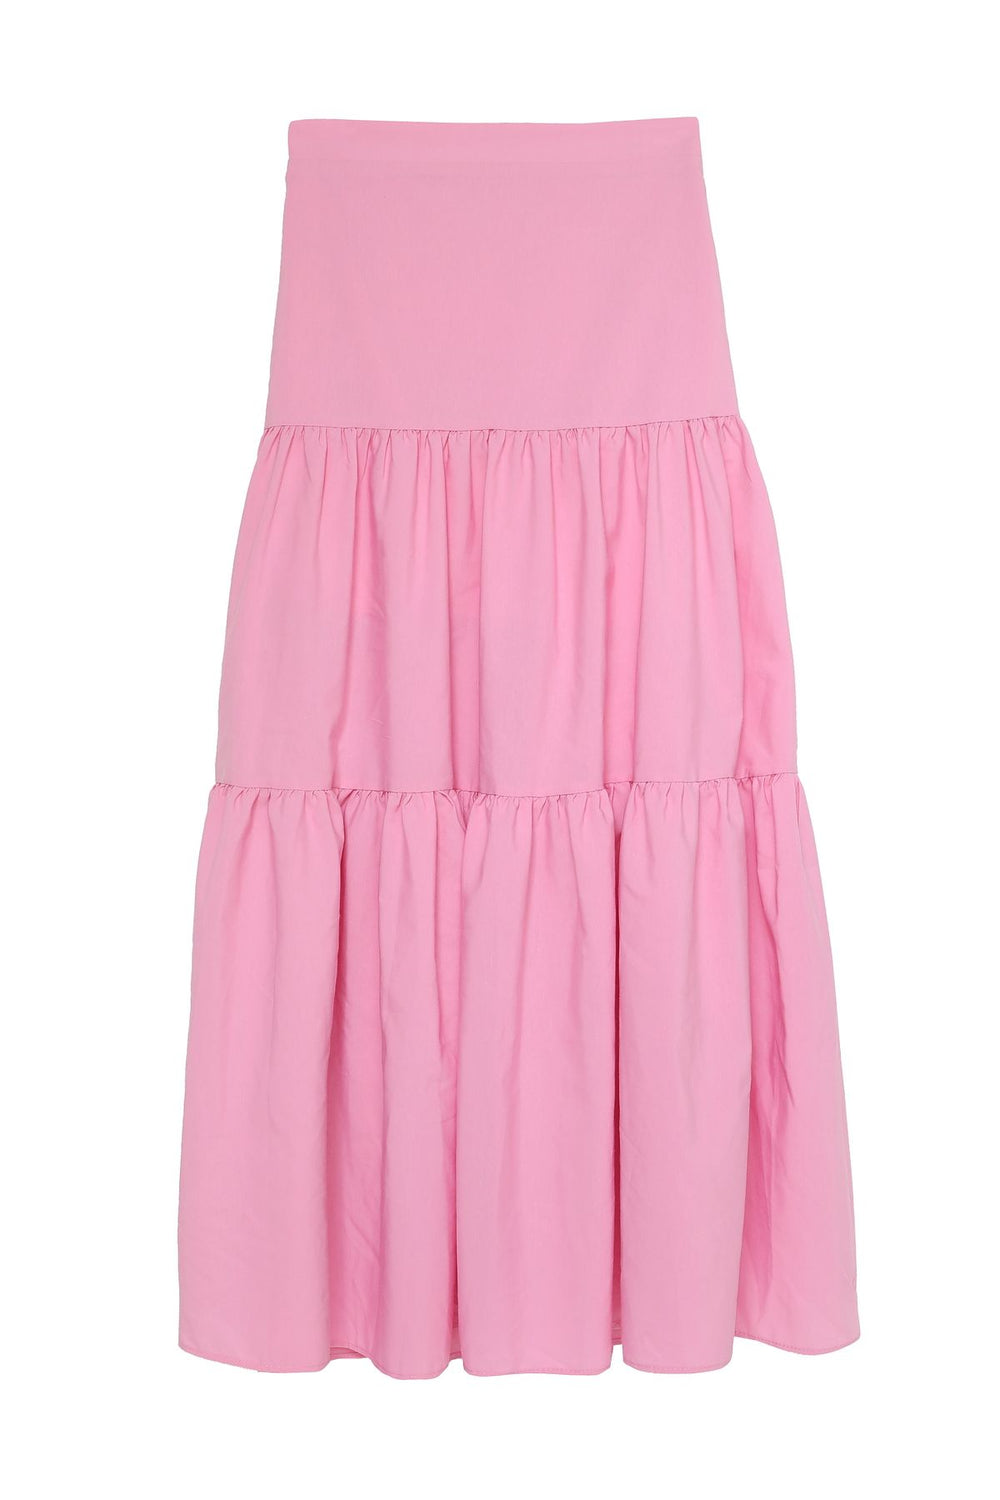 High Waist Long Skirt Pink